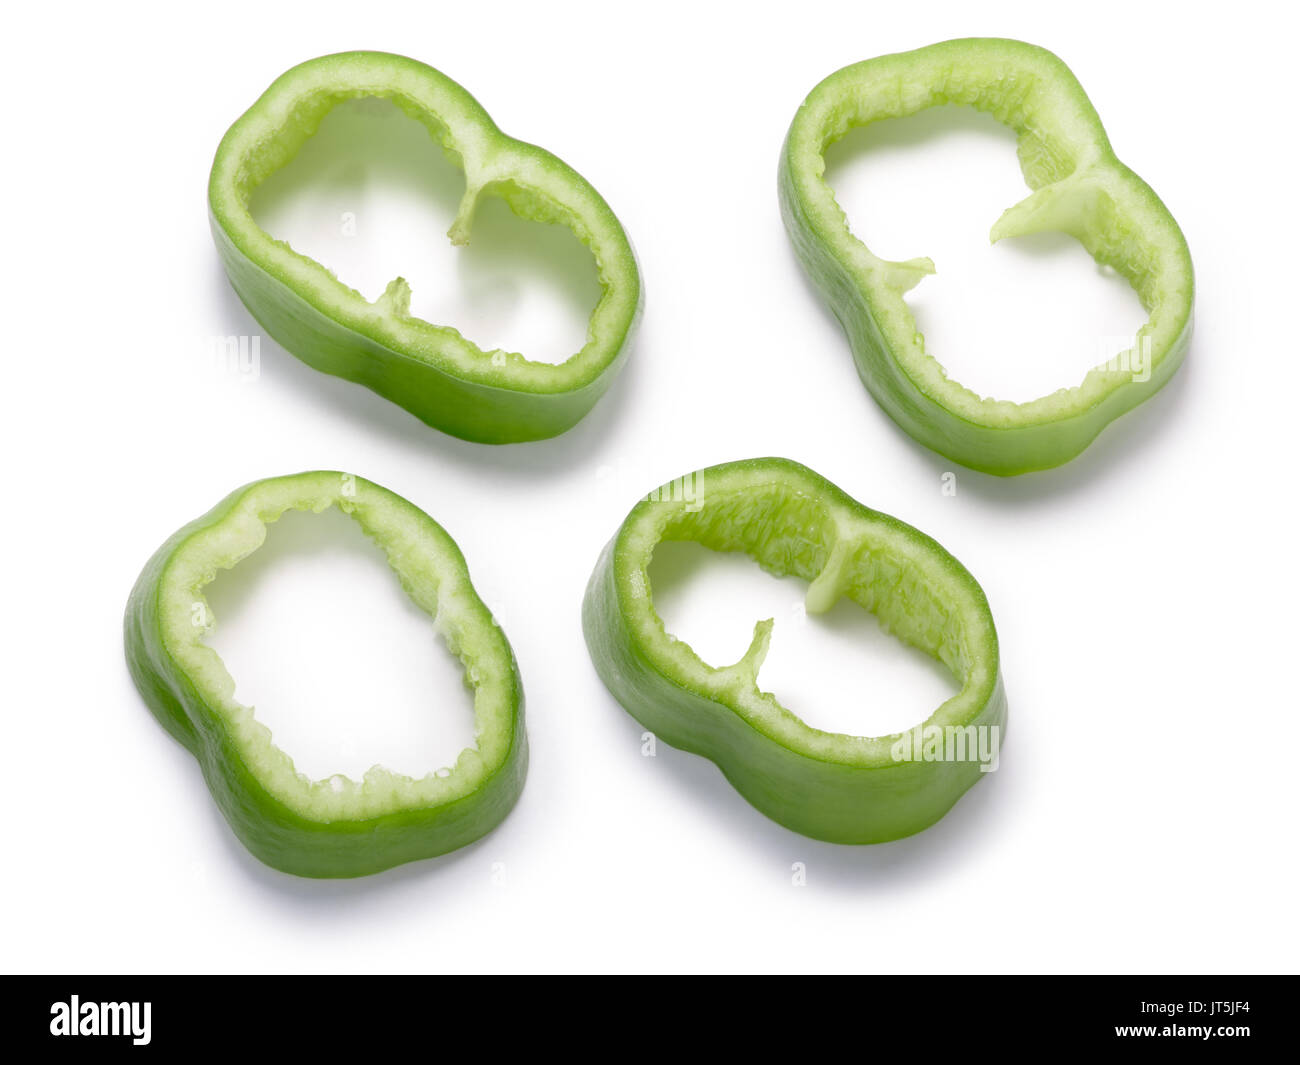 Numex Big Jim green Chile peppers, geschnitten oder gewürfelt. New Mexico pod-Typ (Capsicum annuum). Beschneidungspfade, Schatten getrennt, Ansicht von oben Stockfoto